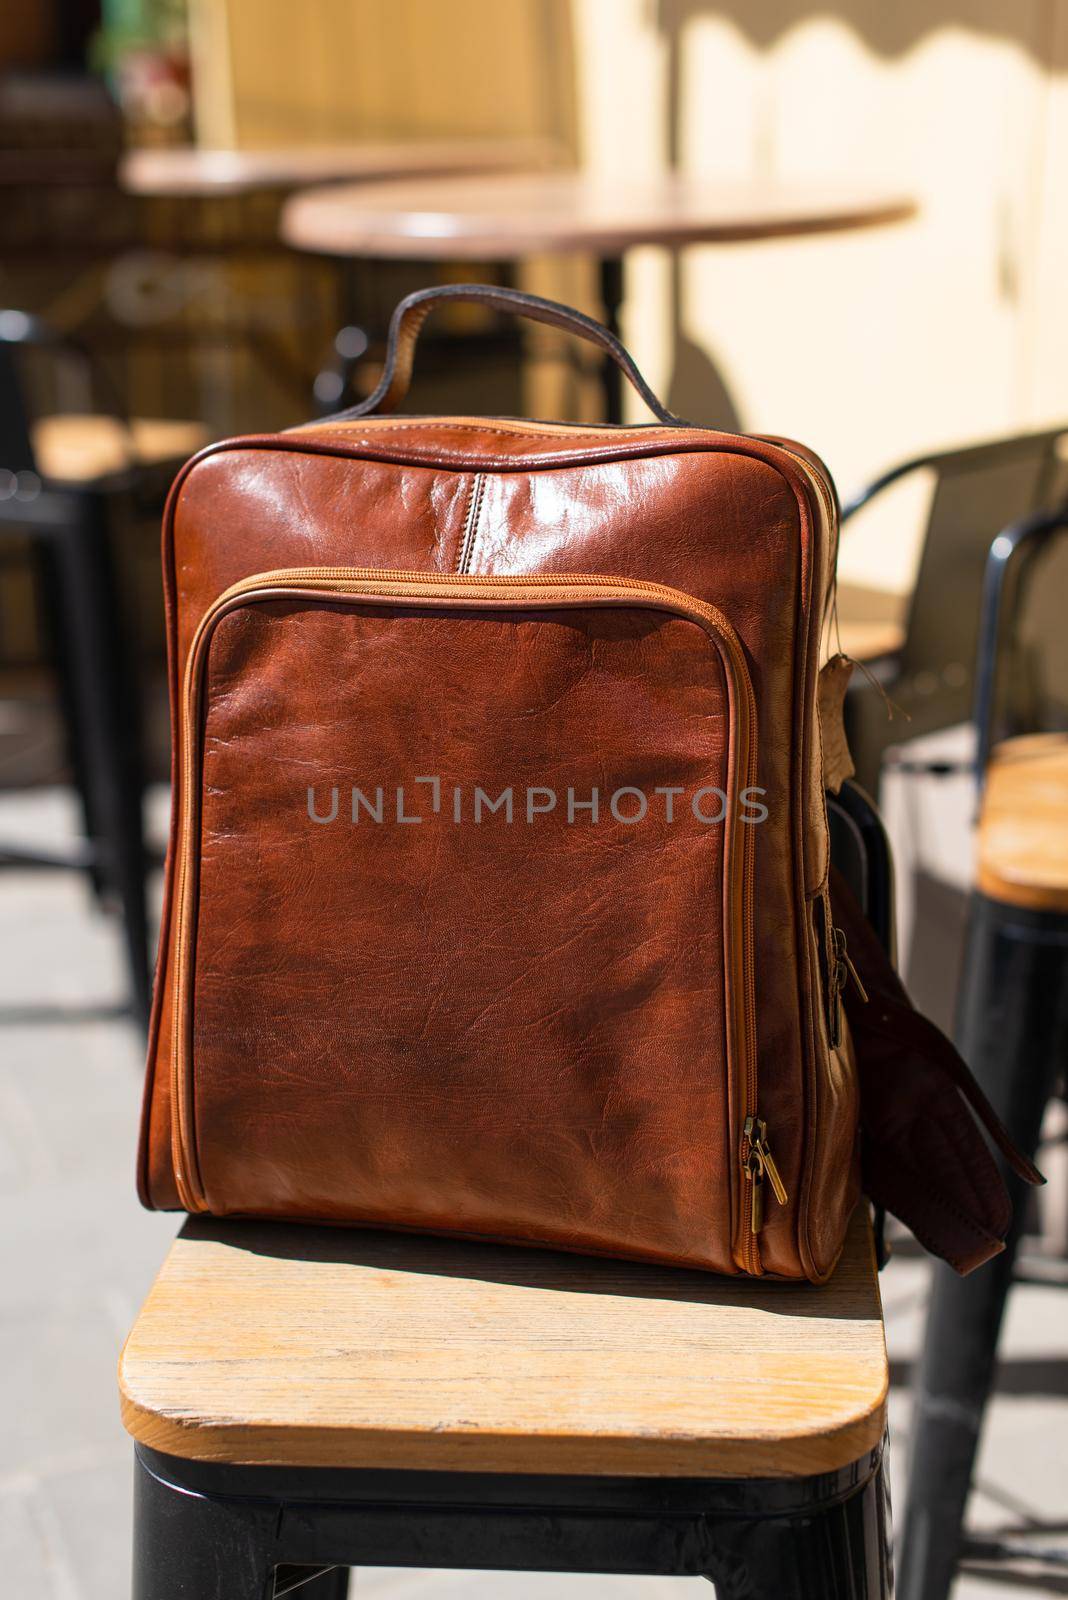 Orange leather backpack. Street photo.